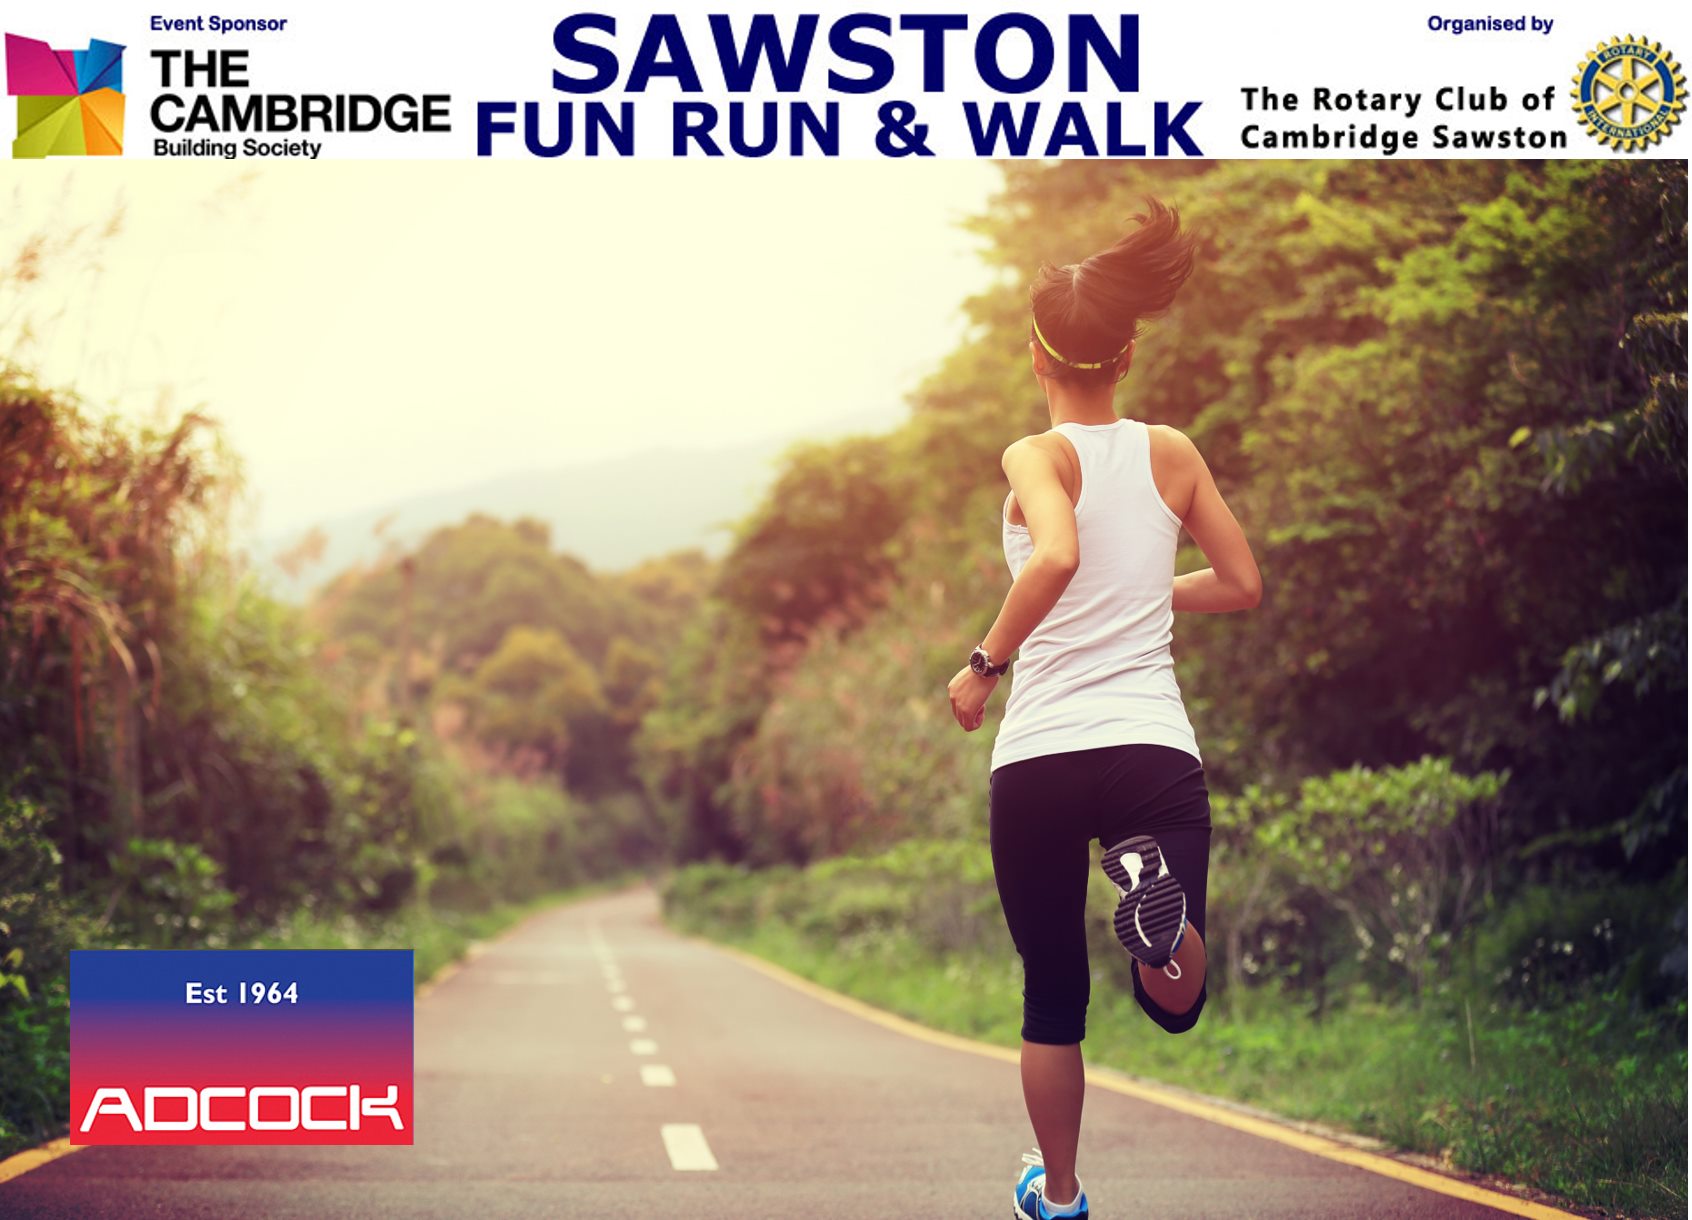 Sawston Fun Run & Walk 2020